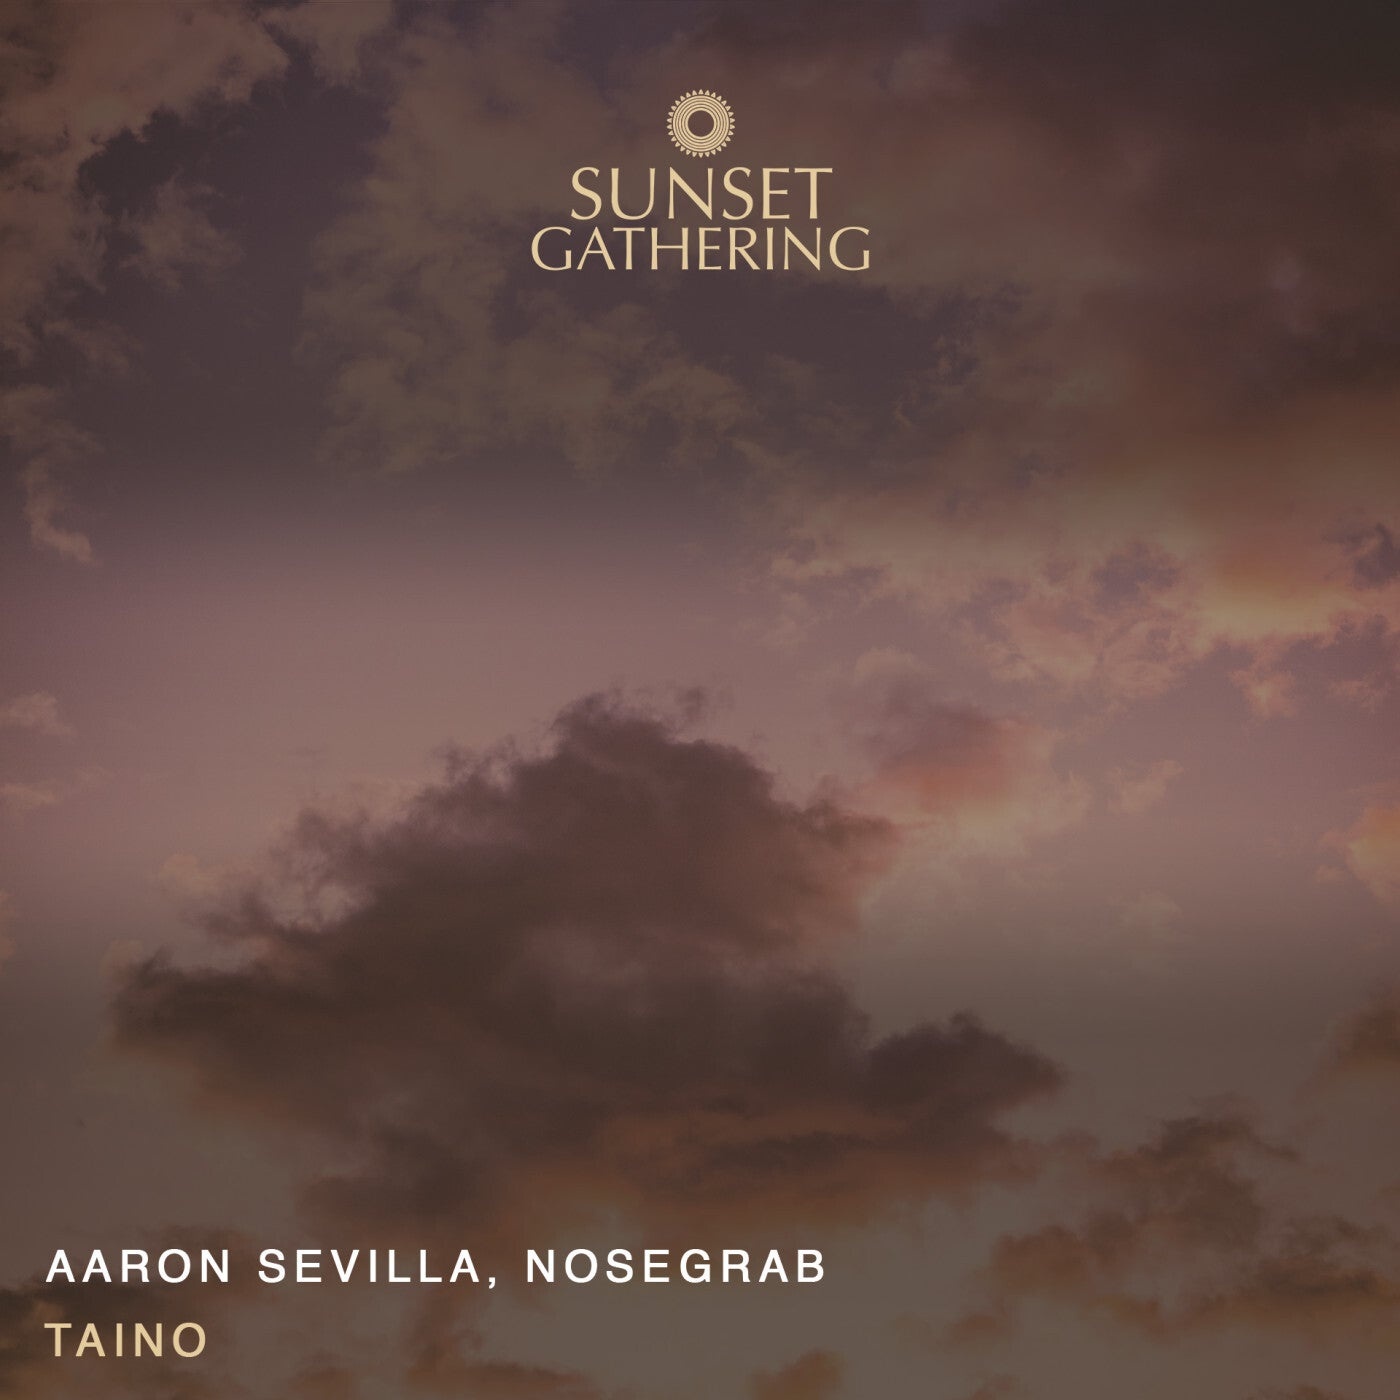 Nosegrab, Aaron Sevilla - Taino [SG007]